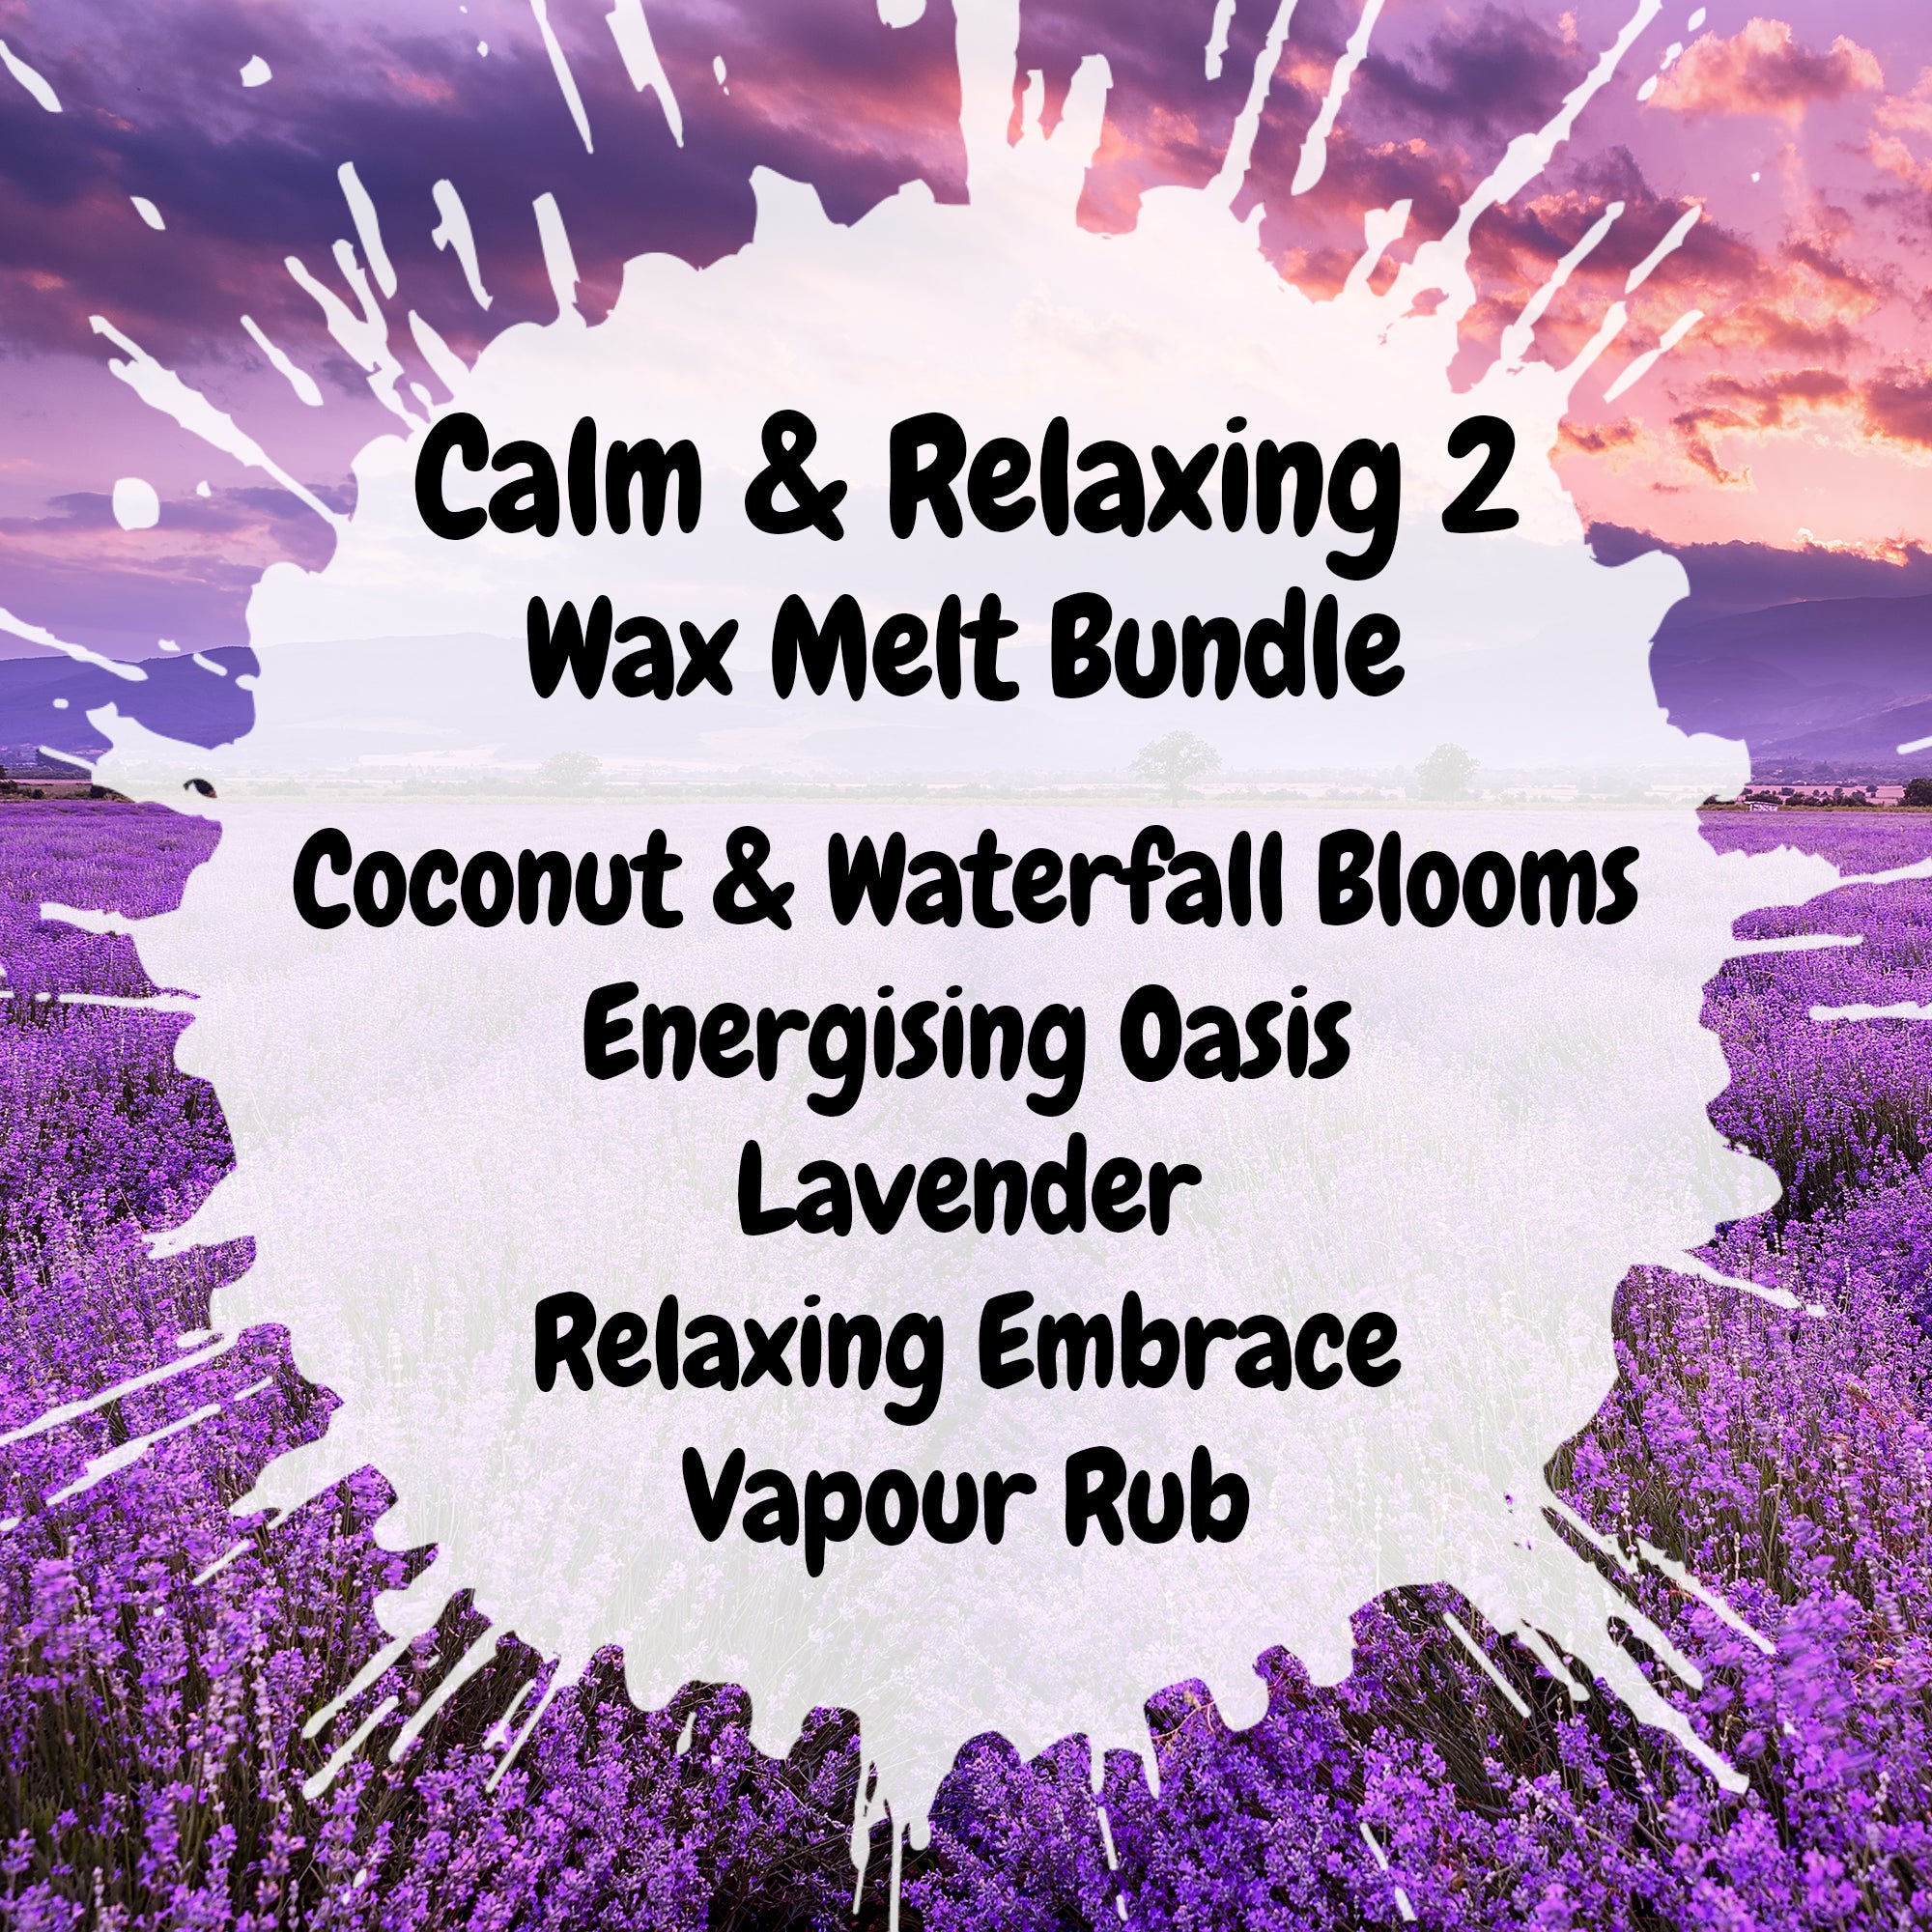 Calm & Relaxing 2 Wax Melt Bundle